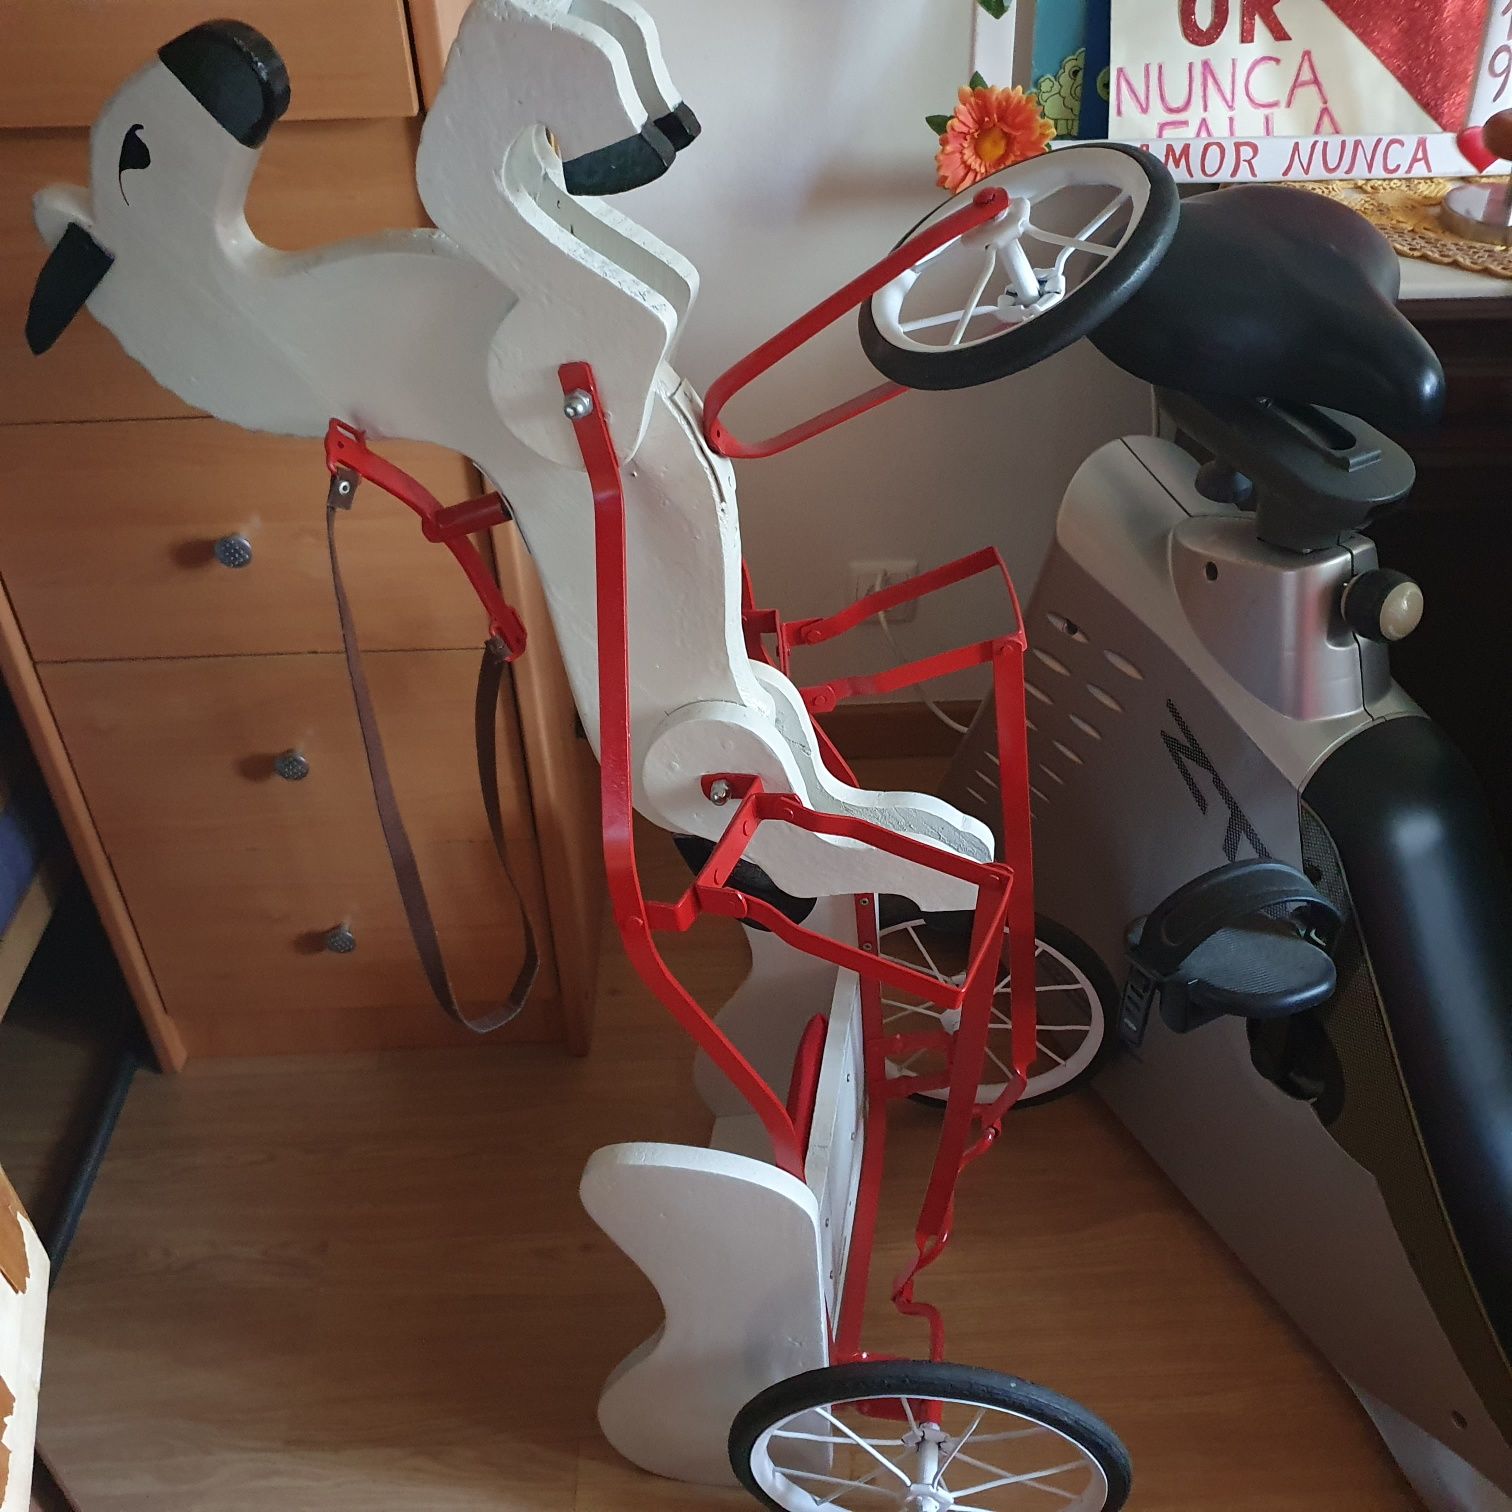 Triciclo Charrete a pedais Vintage Toy